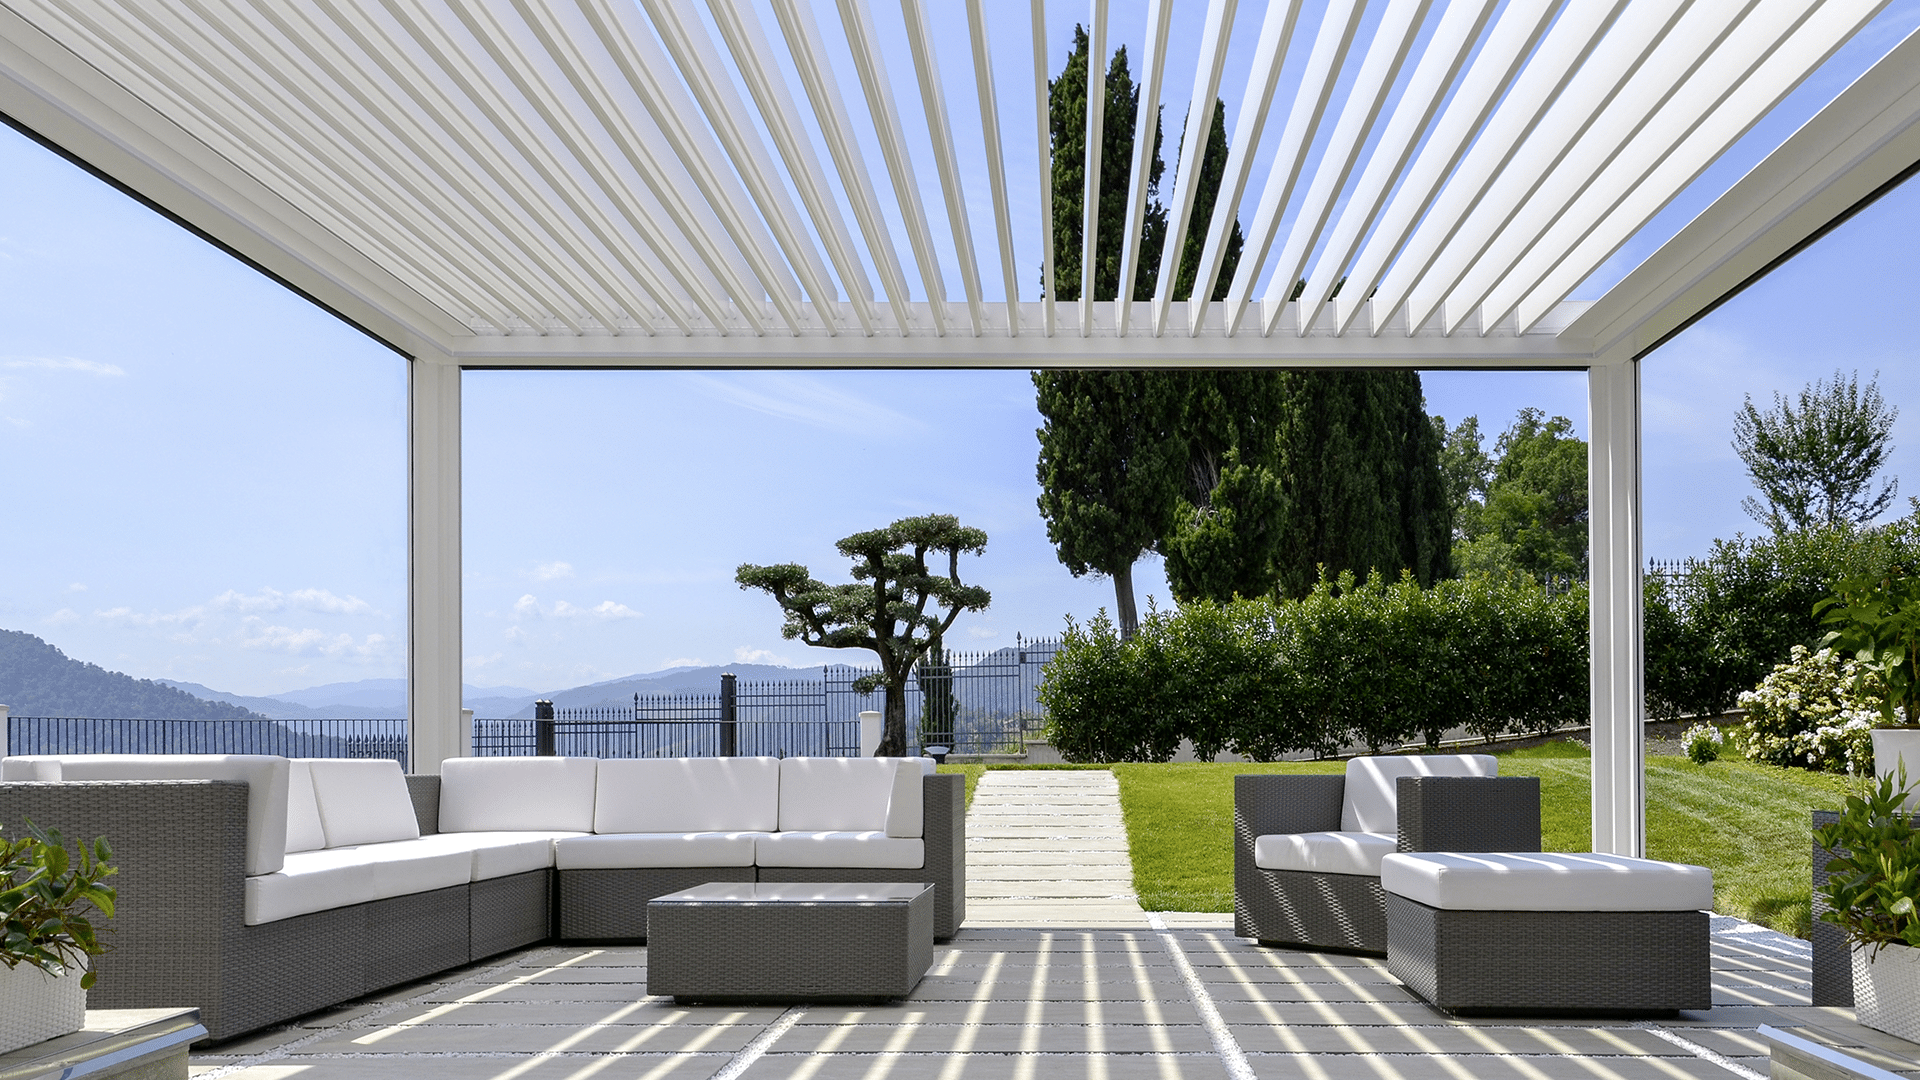 Hella präsentiert eine weiße Pergola-Terrassenüberdachun, darunter Rattanmöbel mit weißen Auflagepolstern in einem schön bepflanztem Garten und strahlend blauem Himmel.